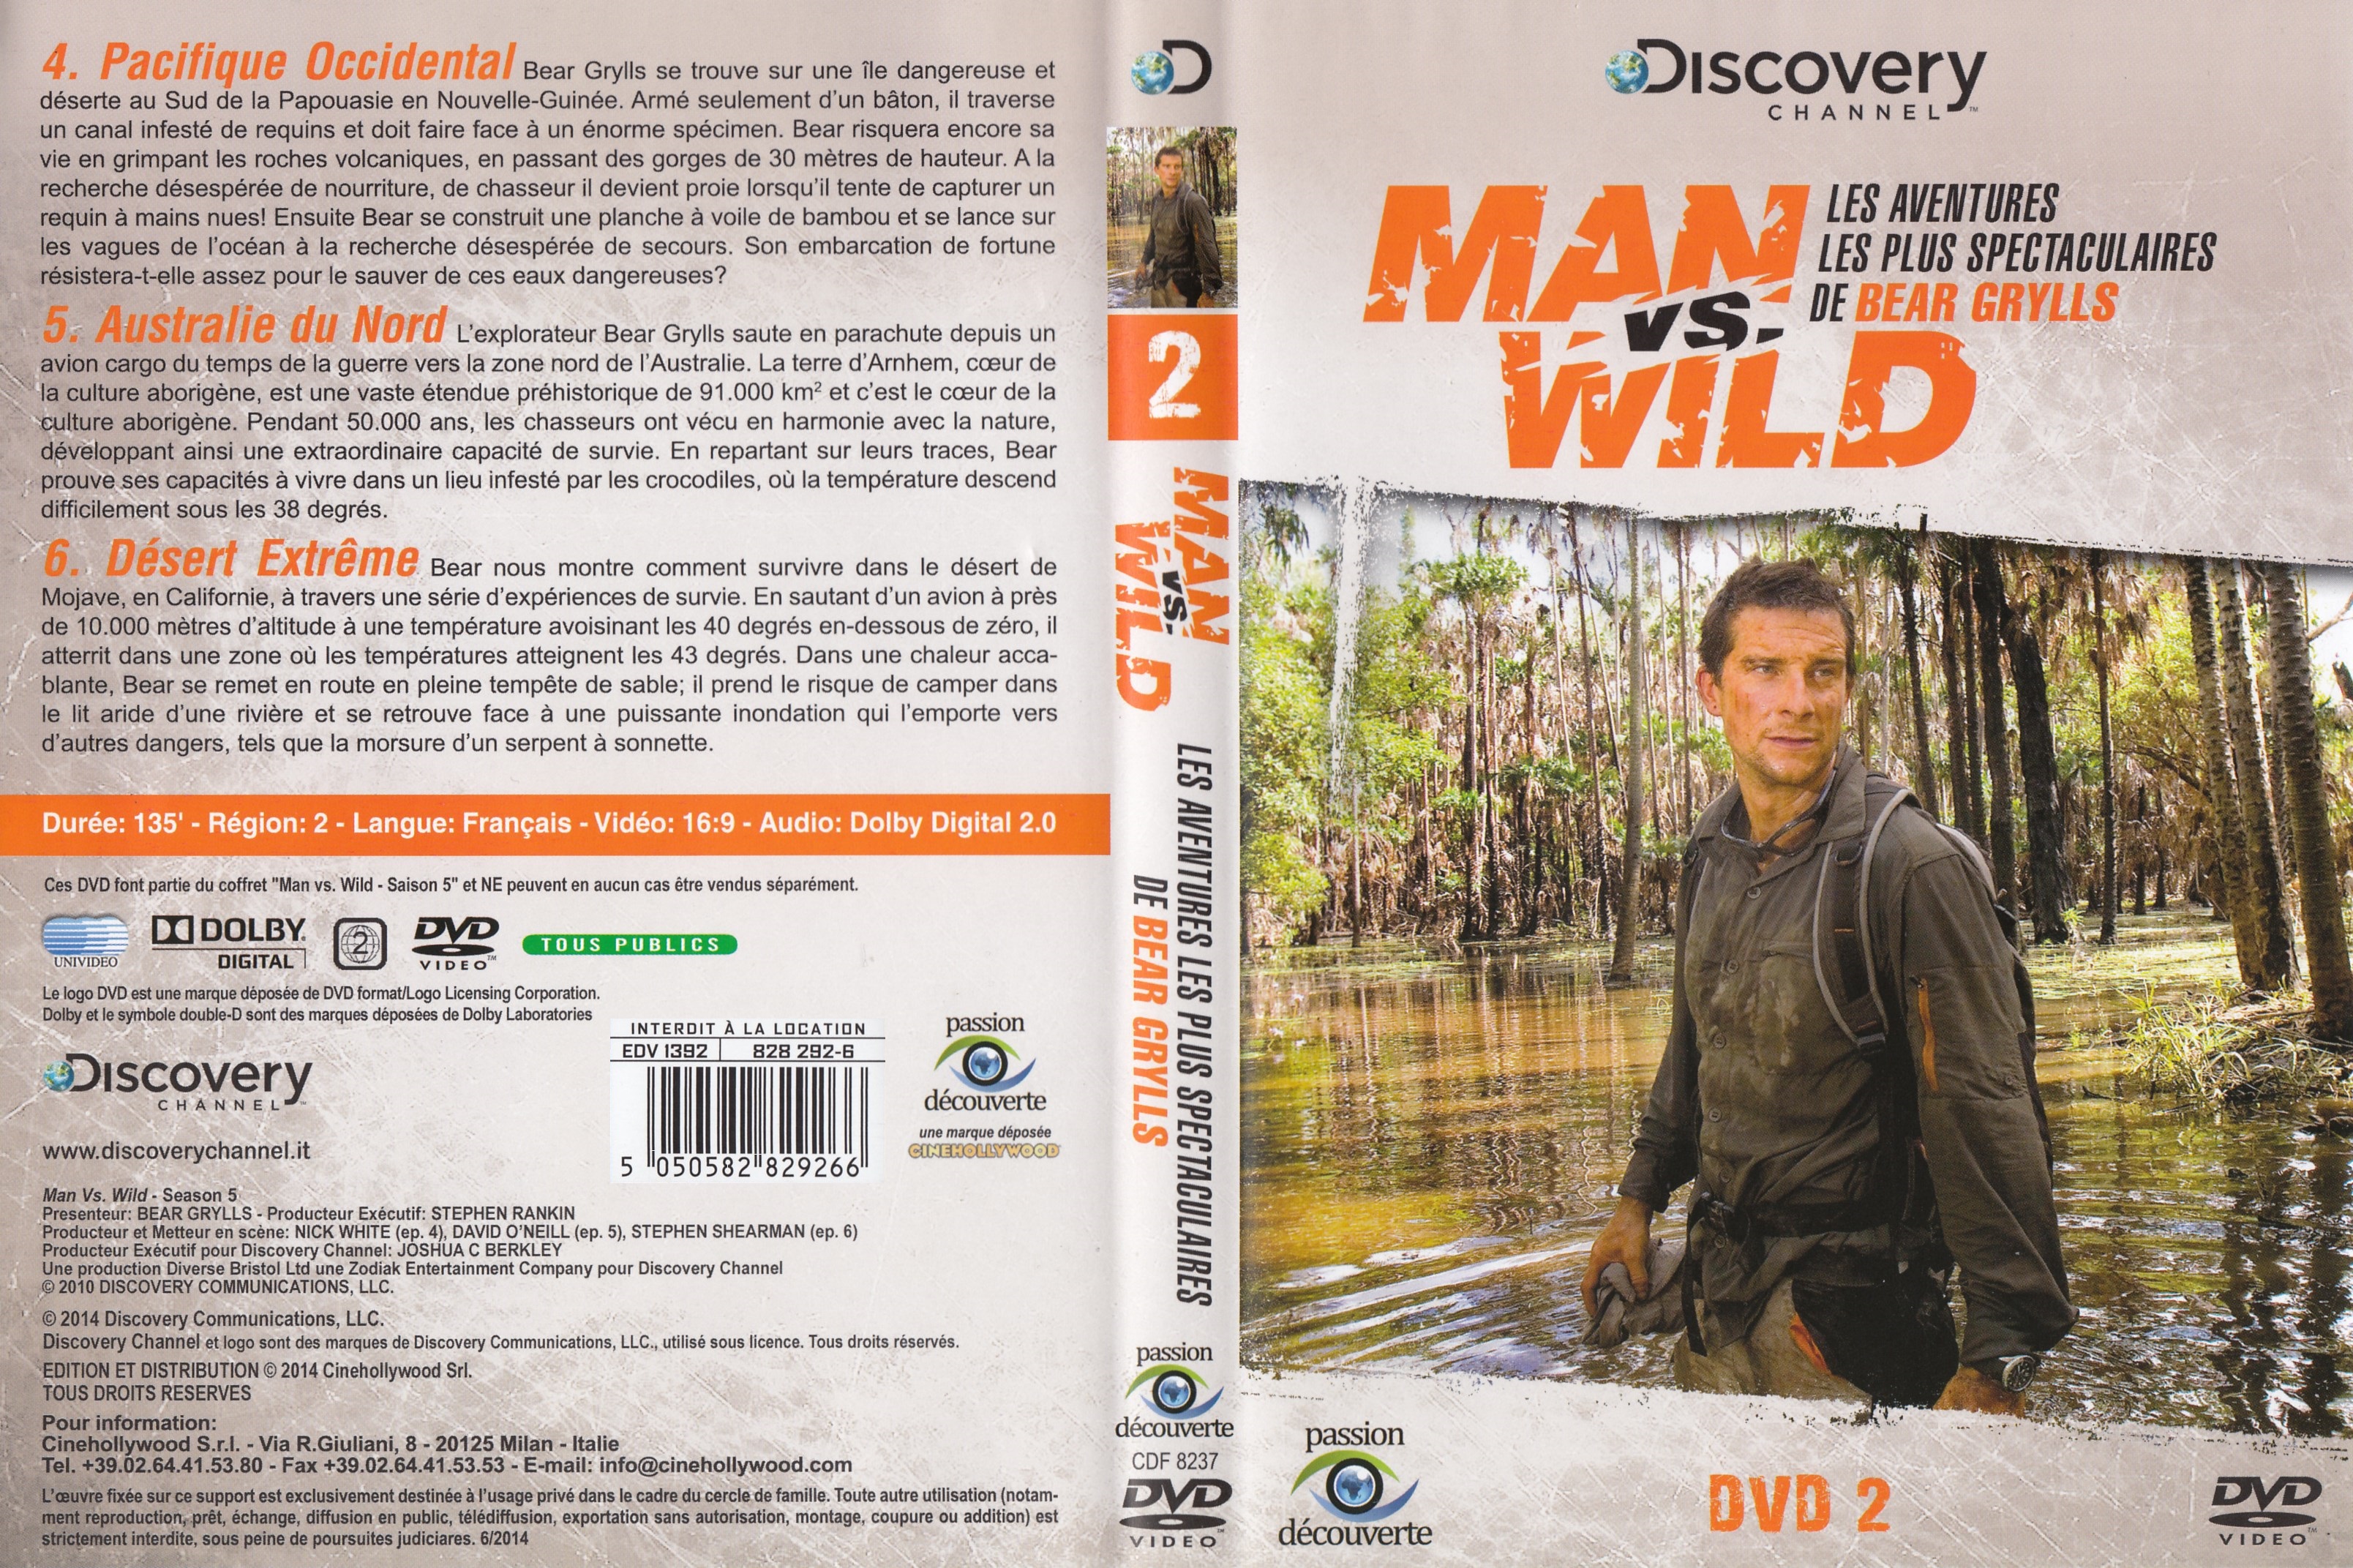 Jaquette DVD Man vs wild - Les aventures les plus spectaculaires de Bear Grylls DVD 2